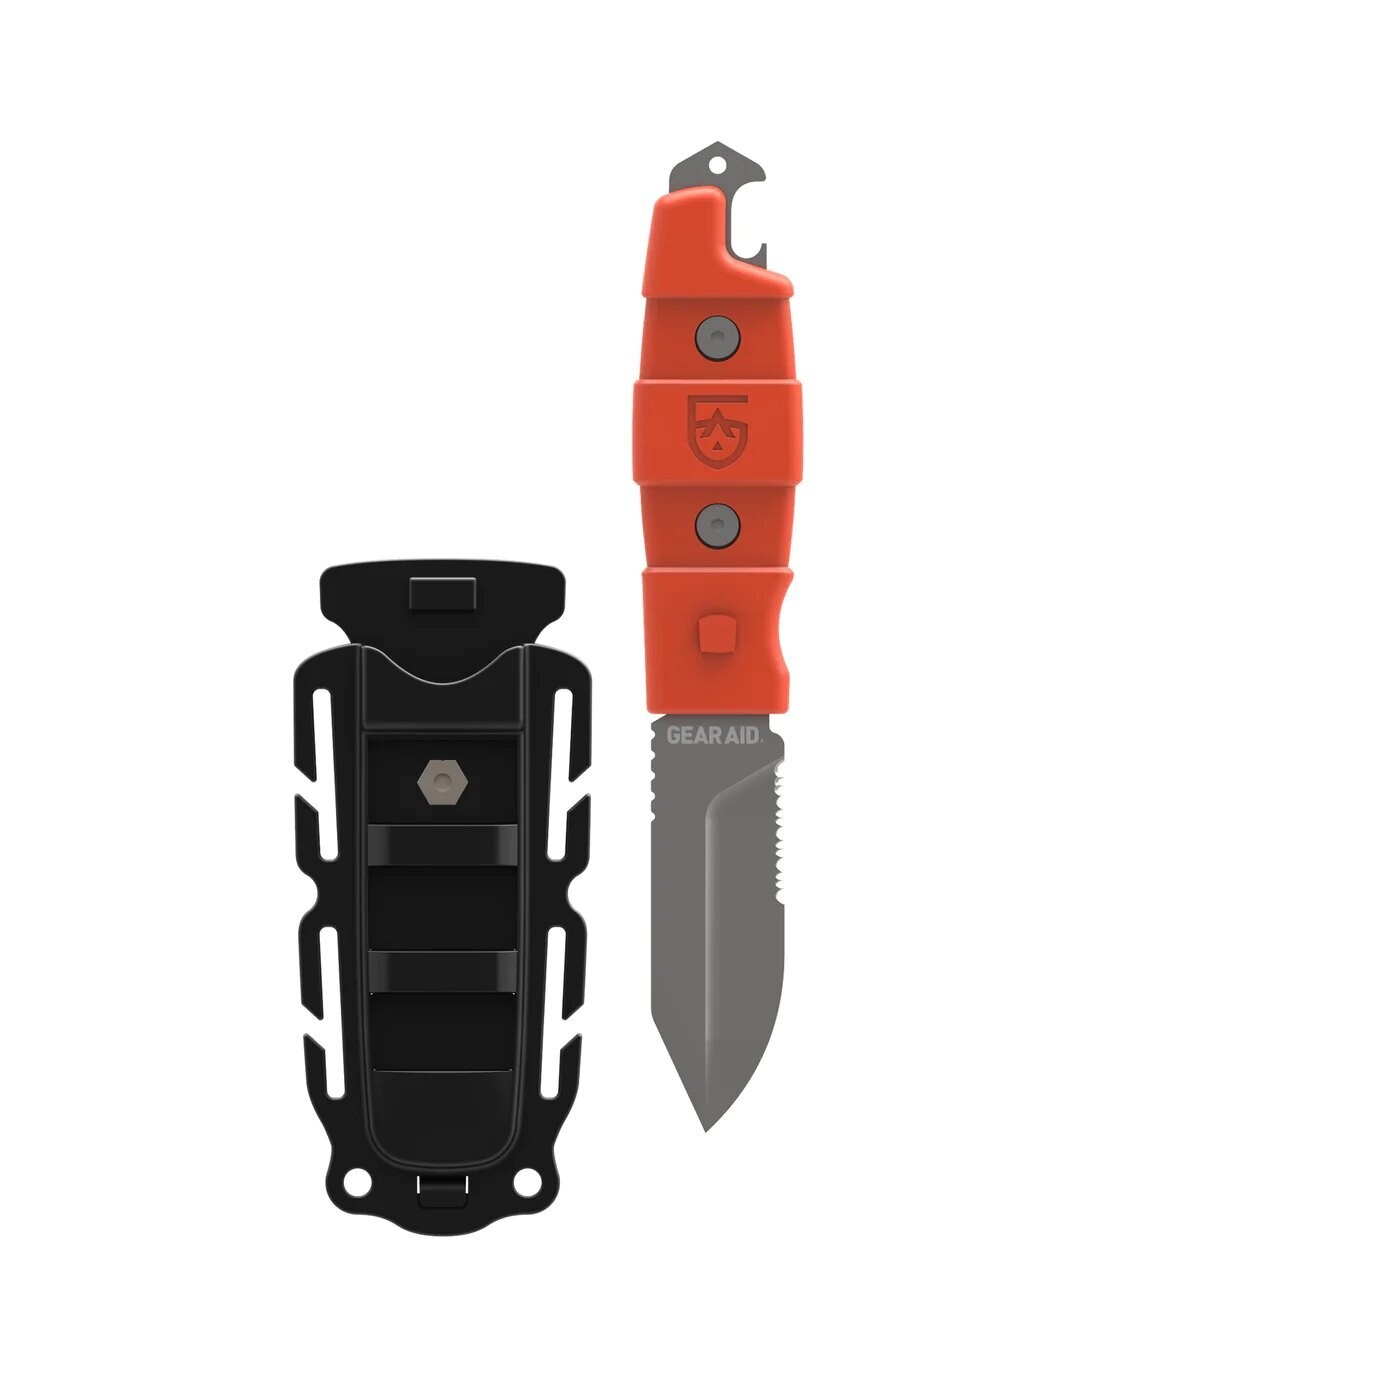 Nůž s pevnou čepelí Buri Utility Gear Aid® – Šedá čepel, Oranžová (Barva: Oranžová, Varianta: Šedá čepel)